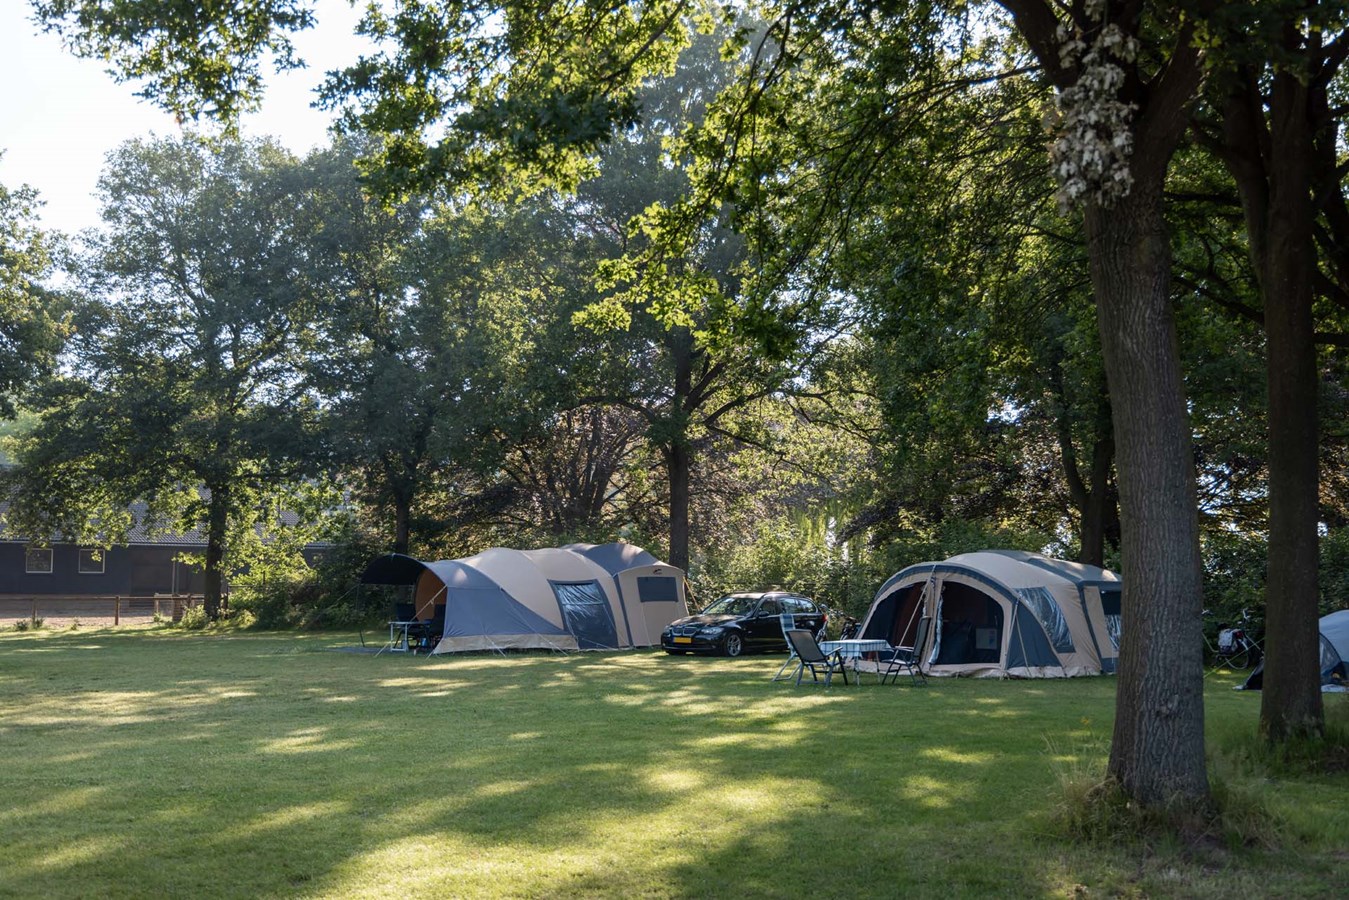 Vakantiepark De Twee Bruggen - Camping in Winterswijk, Gelderland, NL